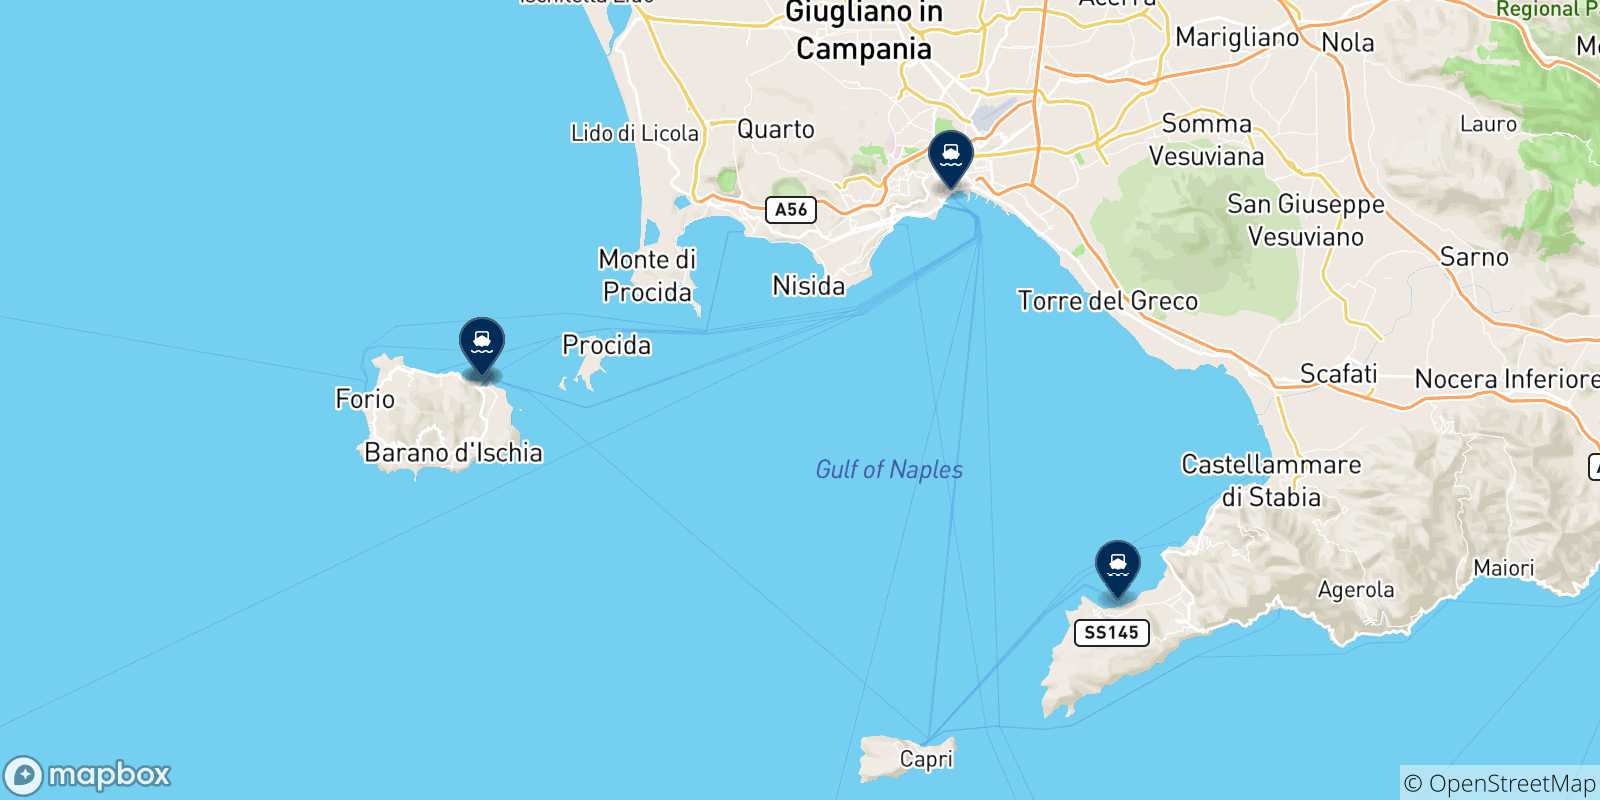 Mappa delle possibili rotte tra Ischia e l'Italia